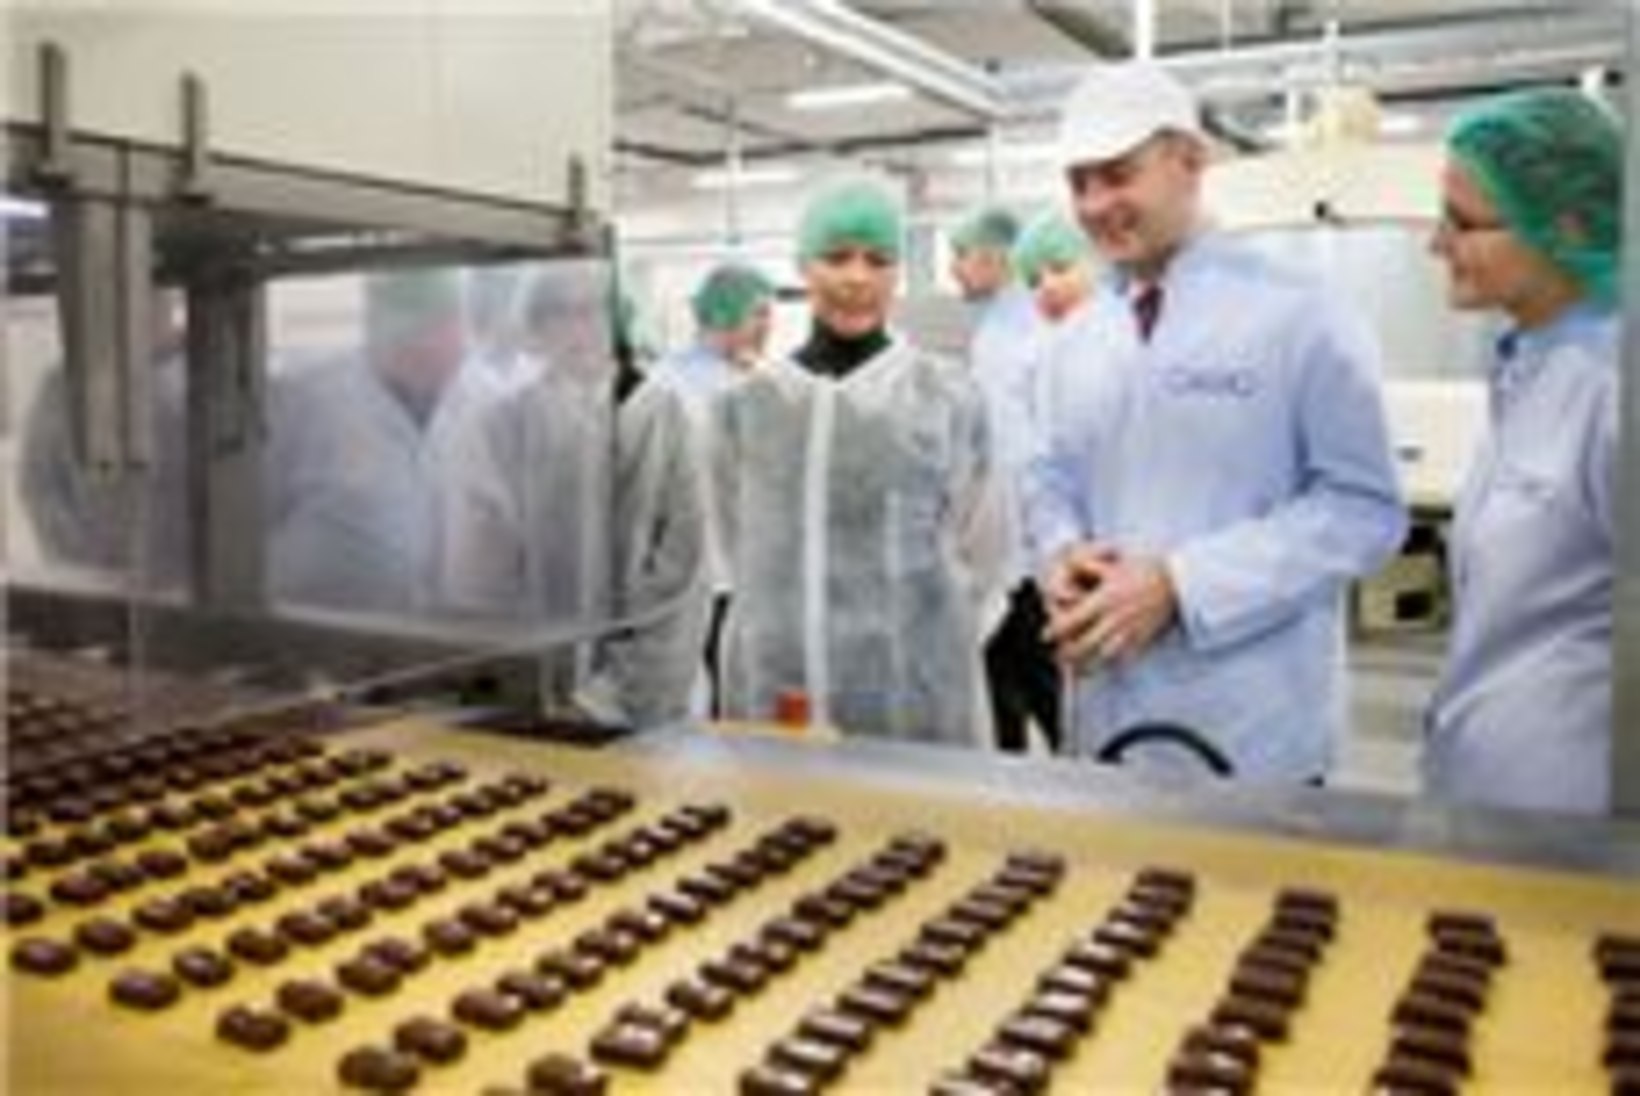 Evelin Ilves kinkis Austria presidendipaarile Kalevi šokolaadi